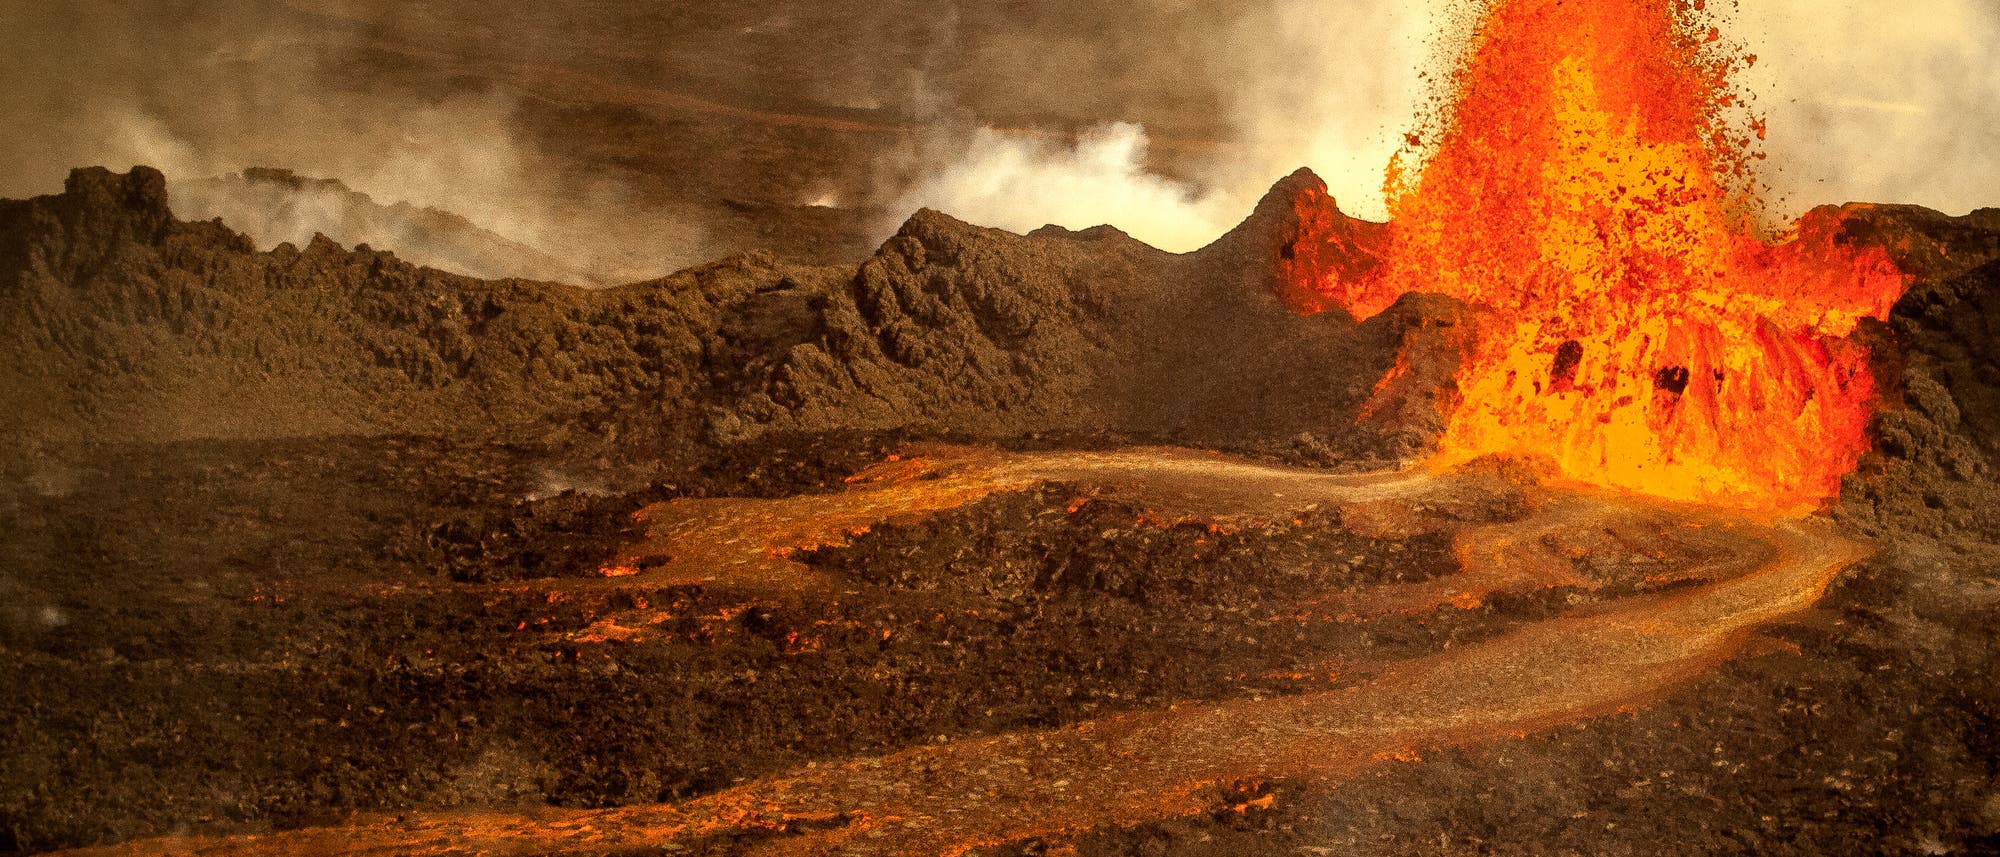 Lavafontäne und Lavastrom des Vulkans Holuhraun in Island. Darüber ungesund bräunliche Aschewölkchen